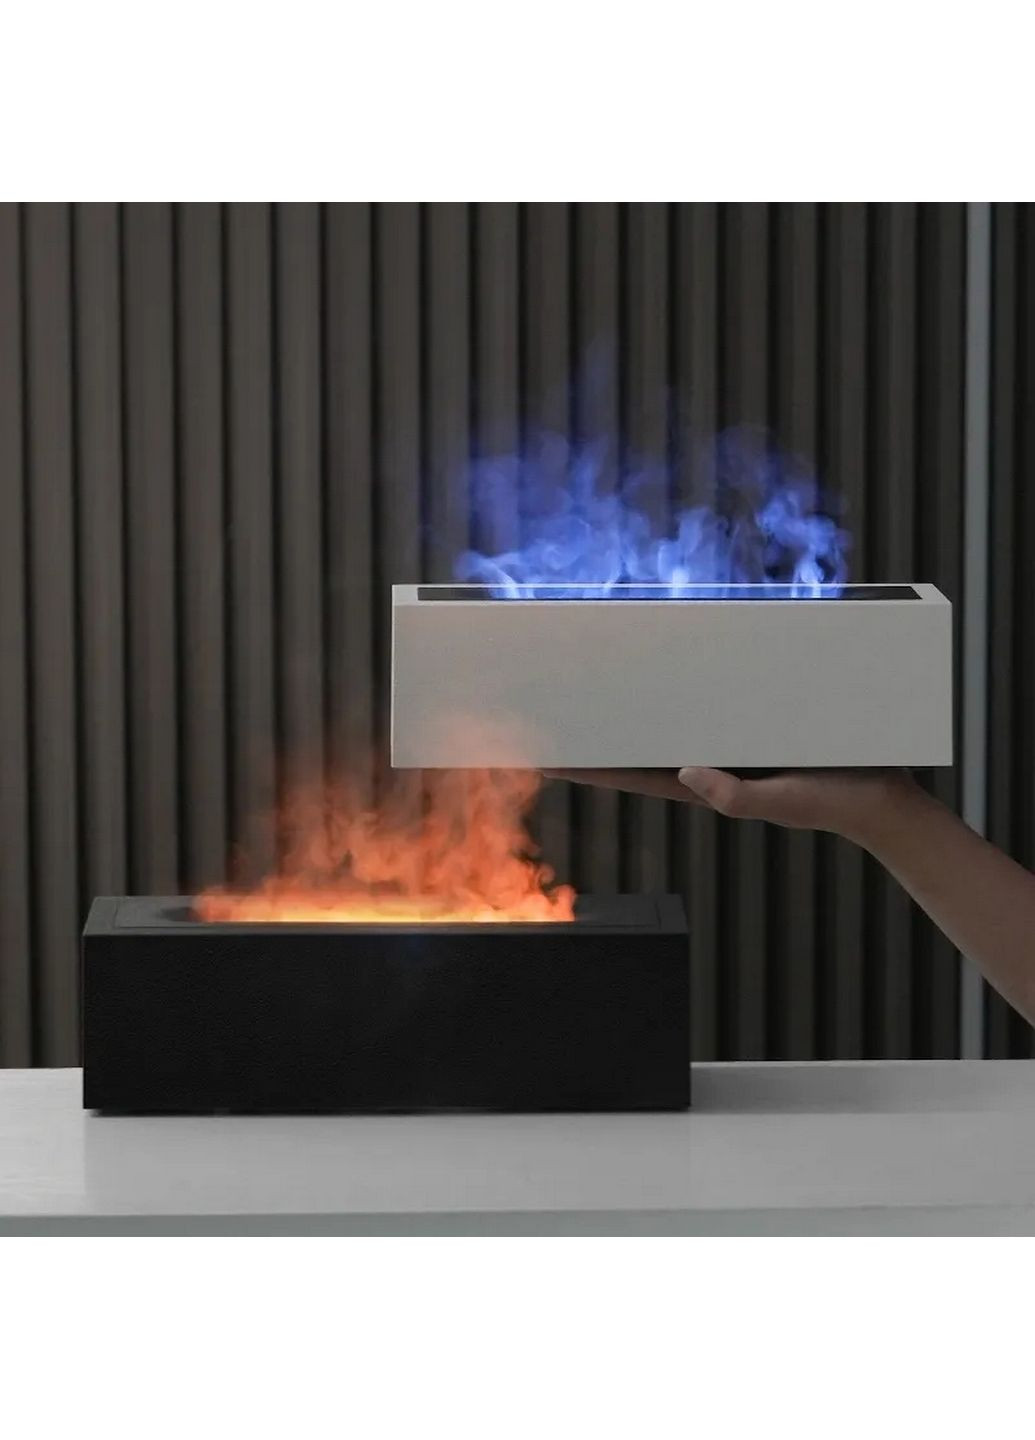 Зволожувач повітря портативний H3 Nordic Style Flame аромадифузор електричний, ефект полум'я, ПОДАРУНОК + 2 Арома олії Kinscoter (293420492)